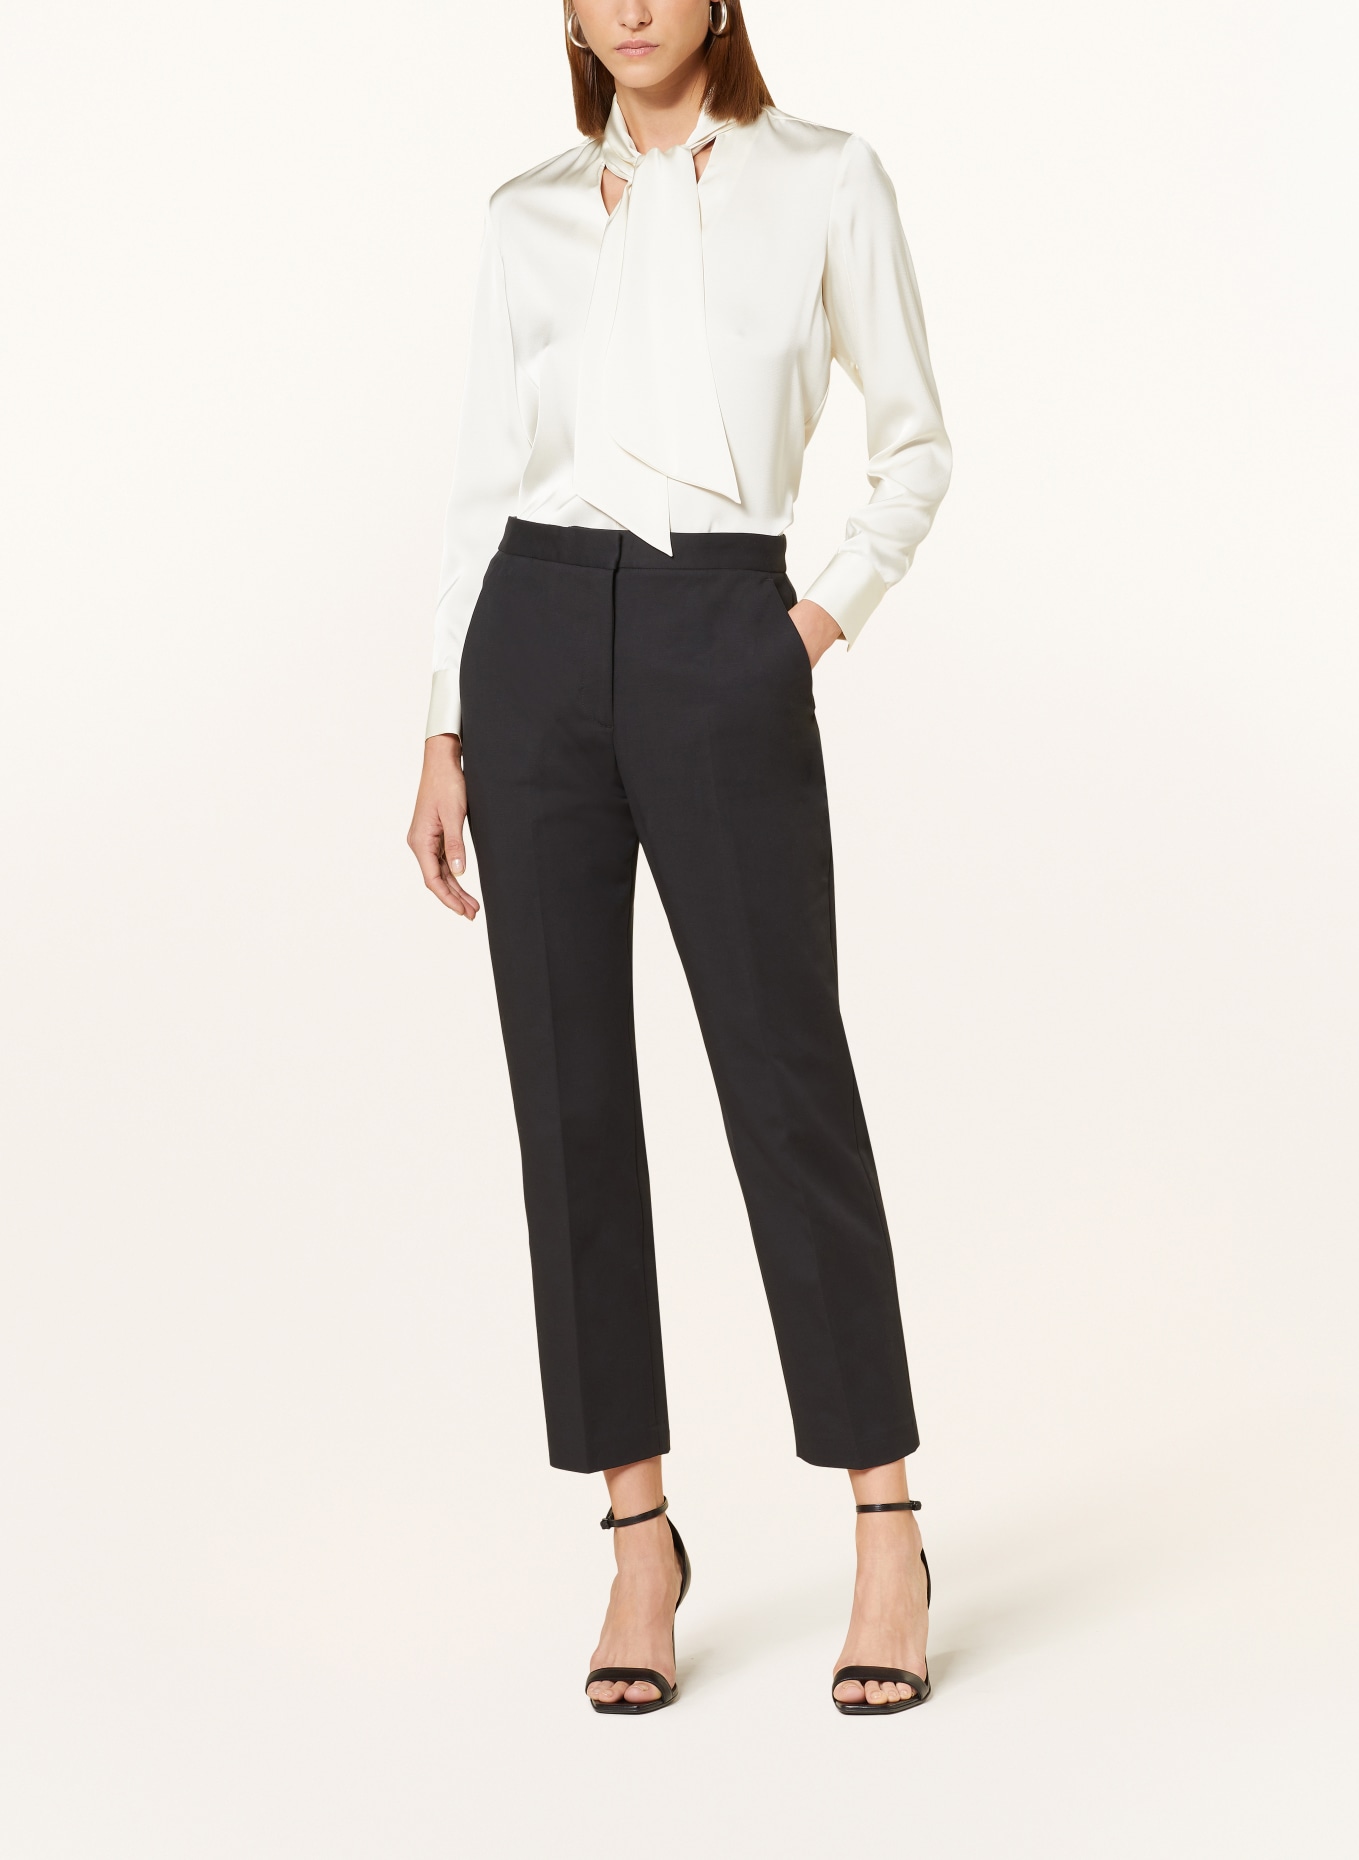 Calvin Klein Women's Plus Size Straight-Leg Pants Navy Multi 16W at Amazon  Women's Clothing store